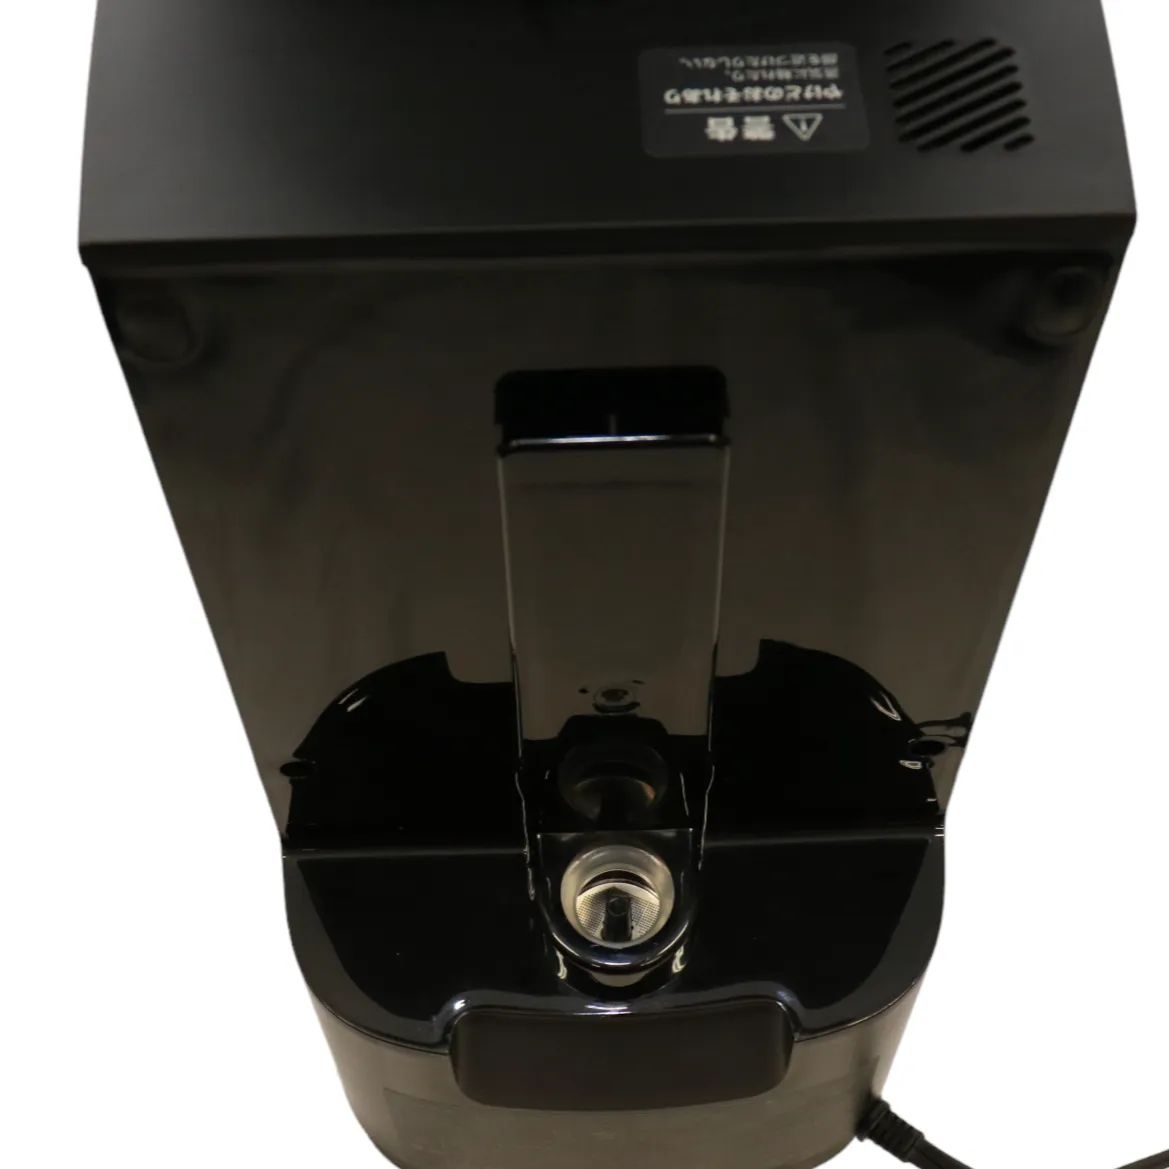 siroca シロカ コーン式全自動コーヒーメーカー カフェばこPRO